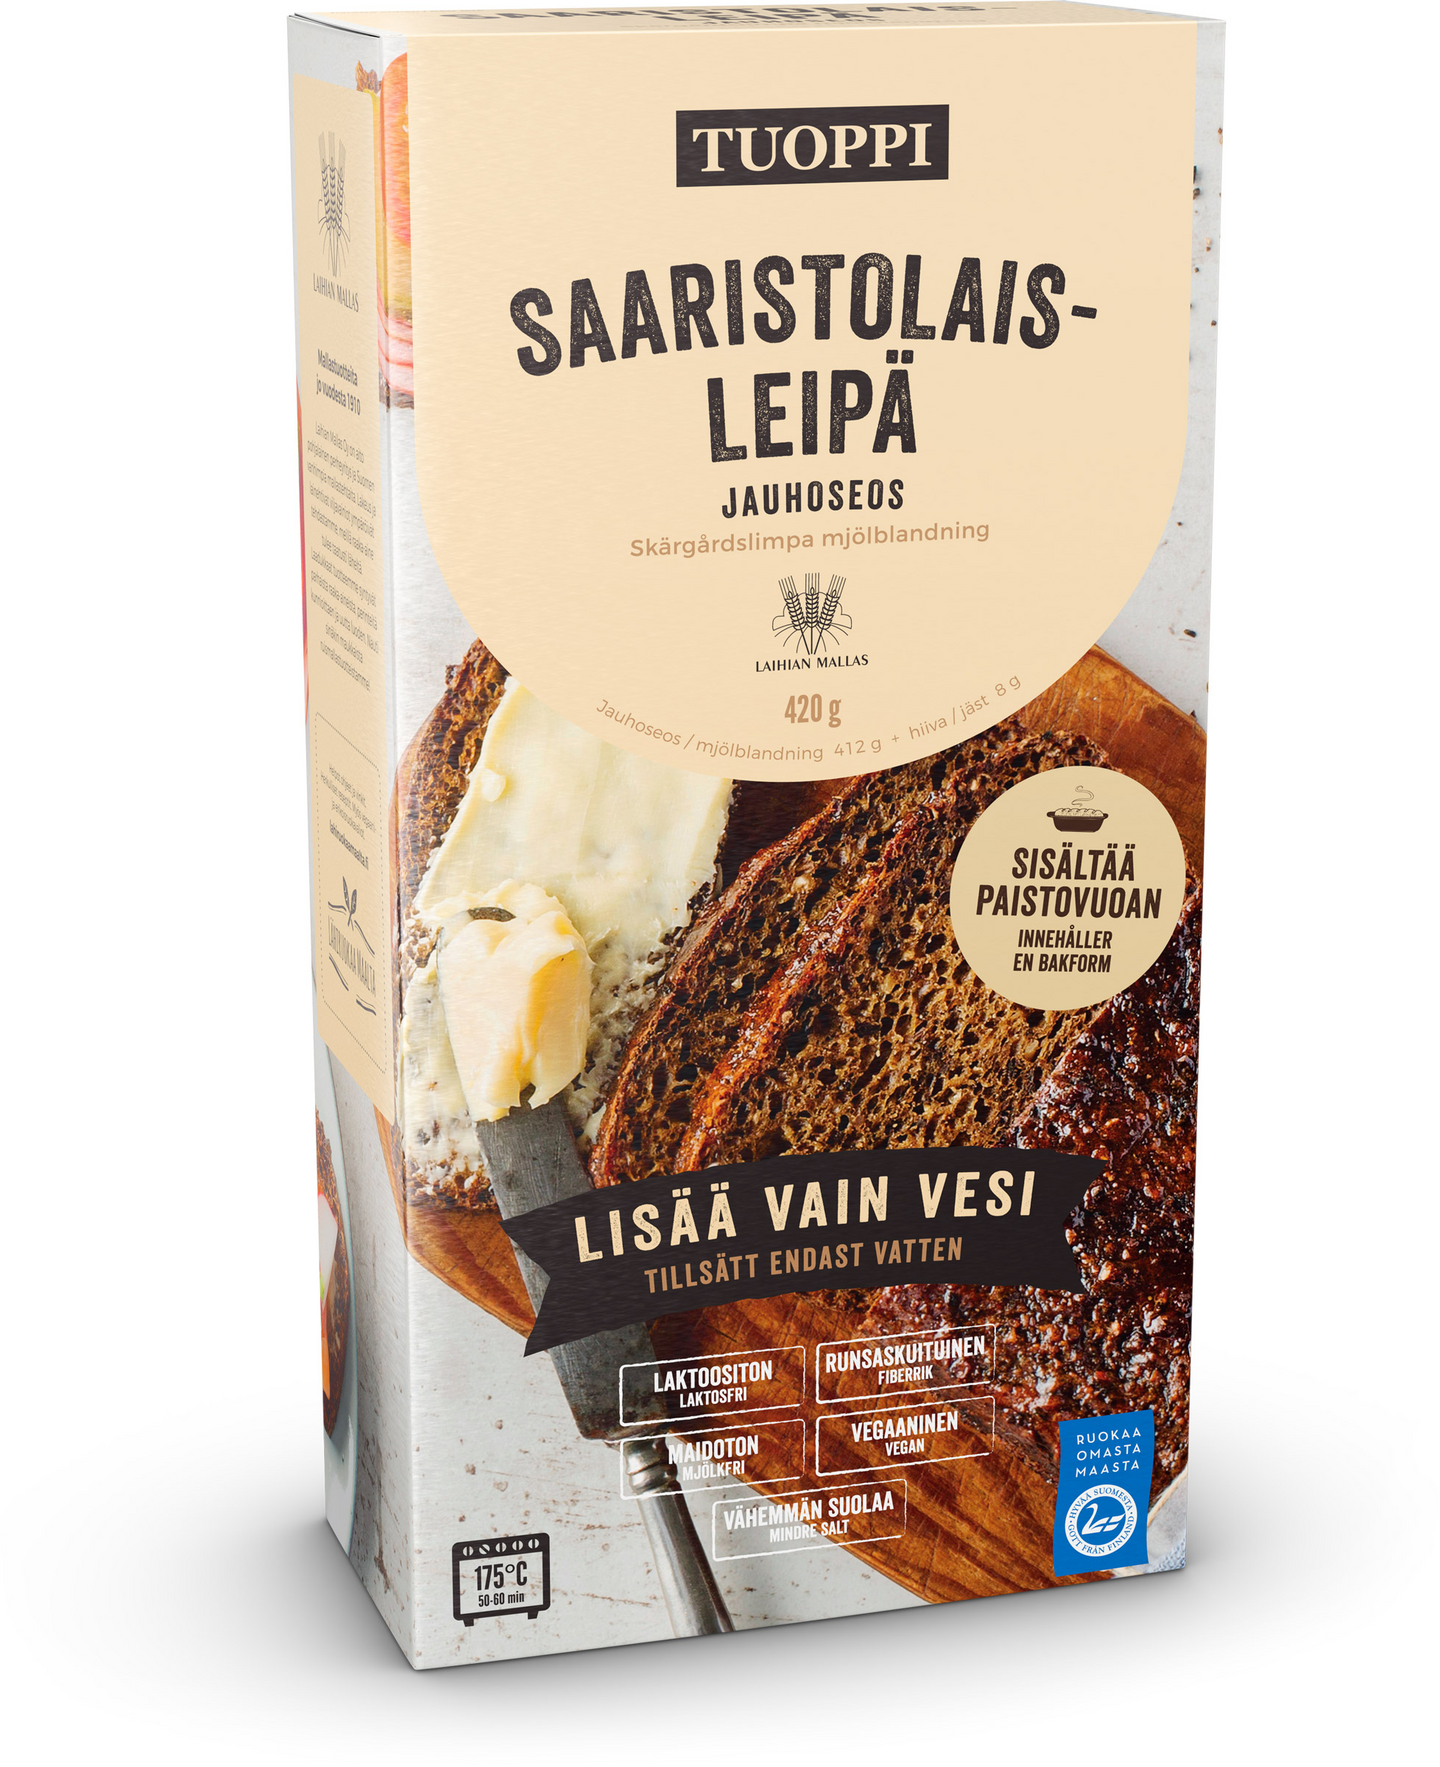 Tuoppi Mallasmestarin saaristolaisleipä jauhoseos 420g | K-Ruoka  Verkkokauppa